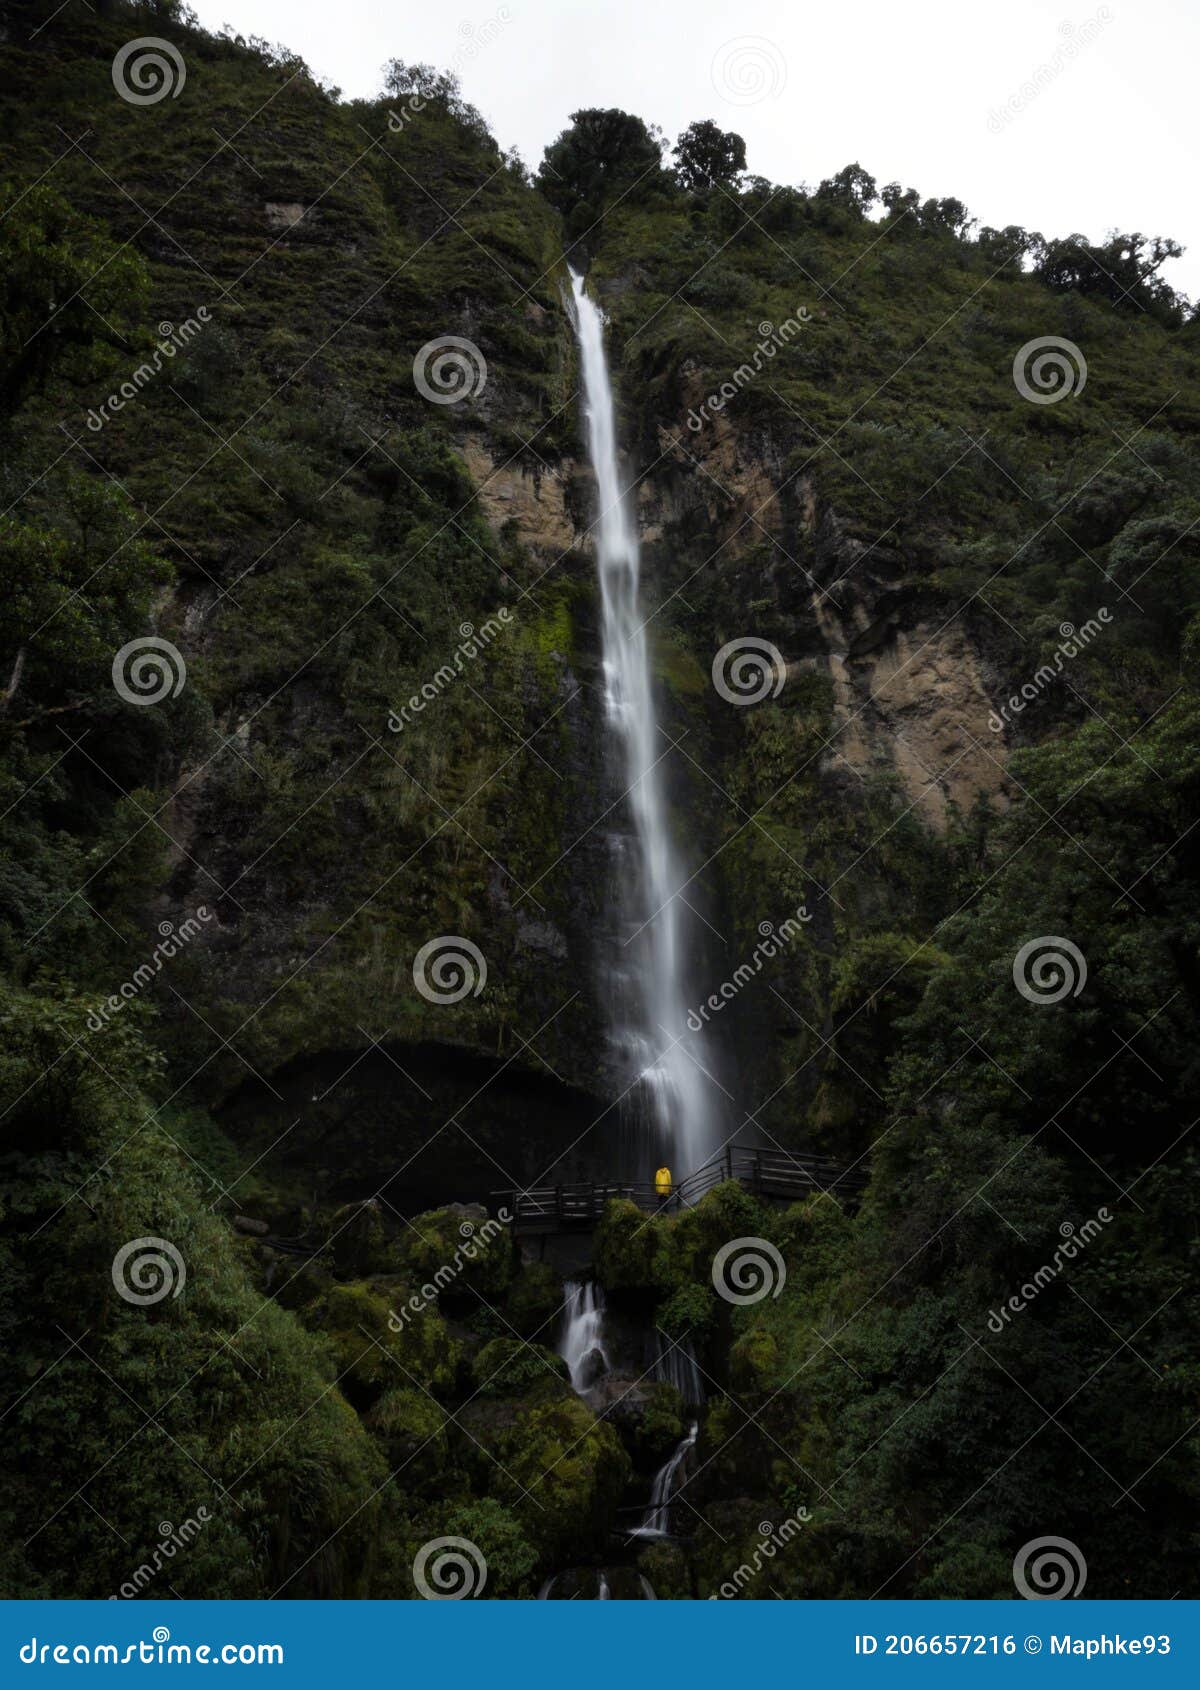 young man in yellow jacket in front of el chorro de giron waterfall cascade cataract near cuenca azuay ecuador